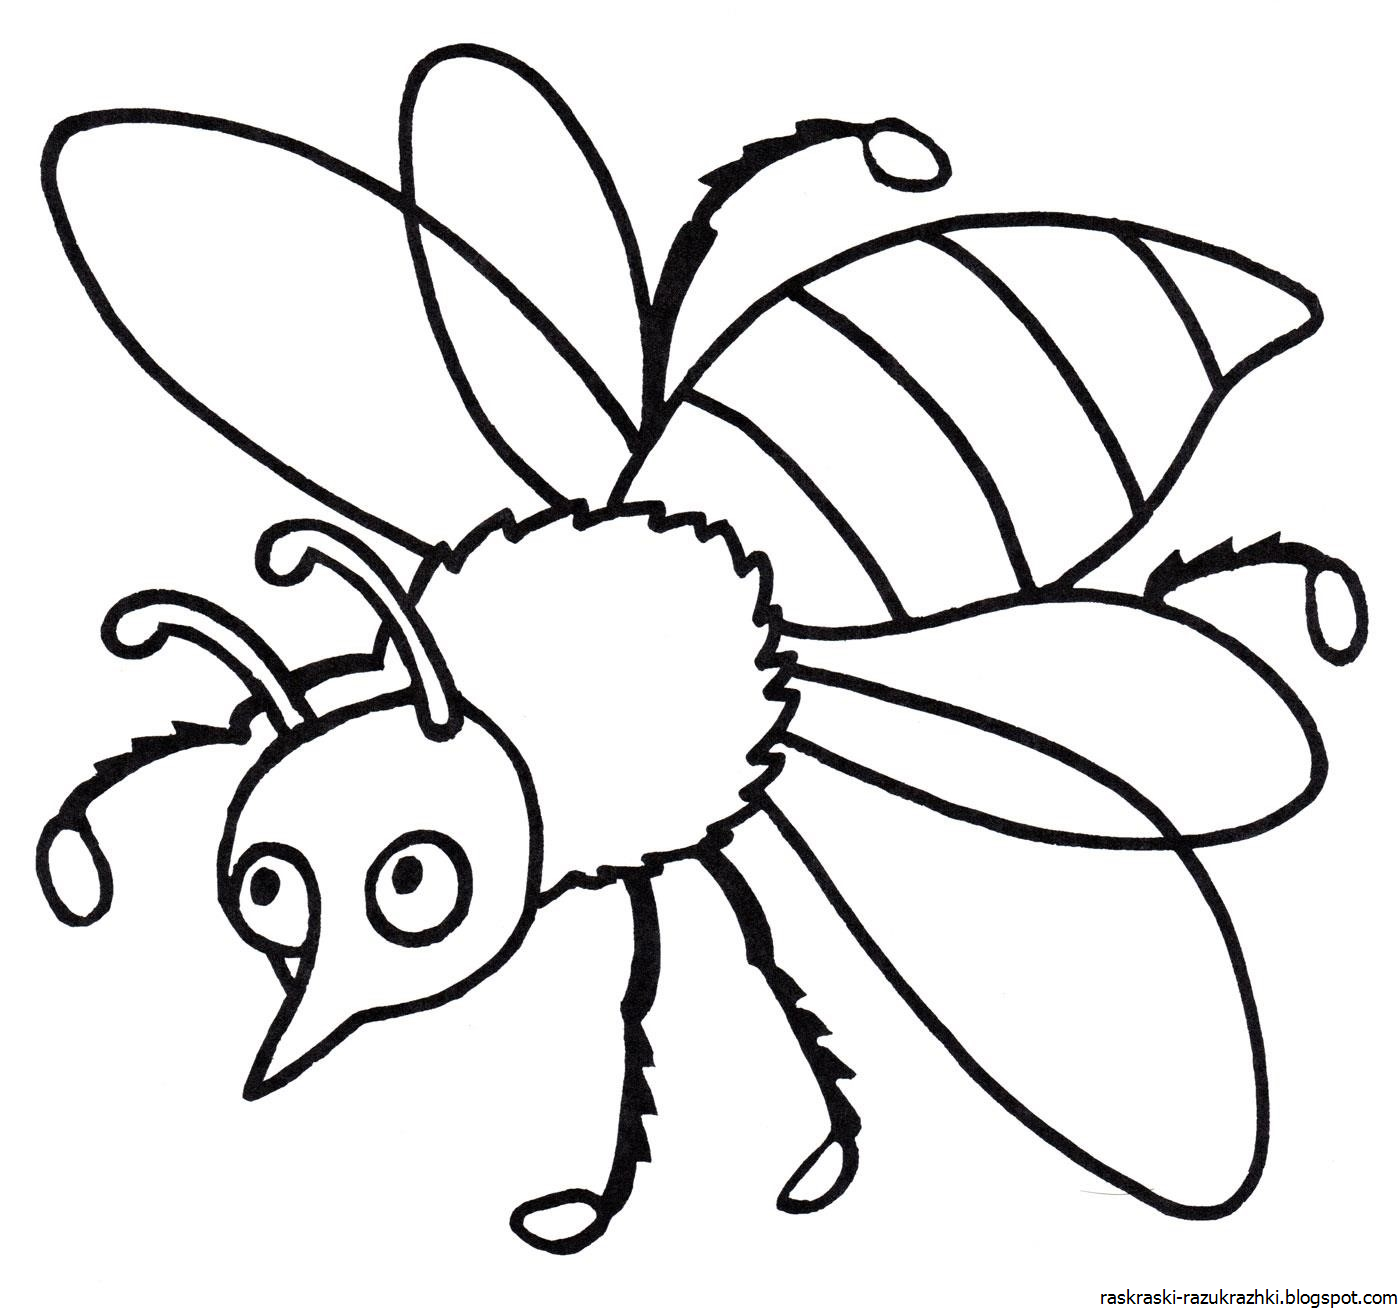 Насекомые раскраска для детей 6 7 лет. Насекомые раскраска для детей. Раскраски насекомые для детей 5-6 лет. Пчела раскраска. Раскраска насекомые для малышей.